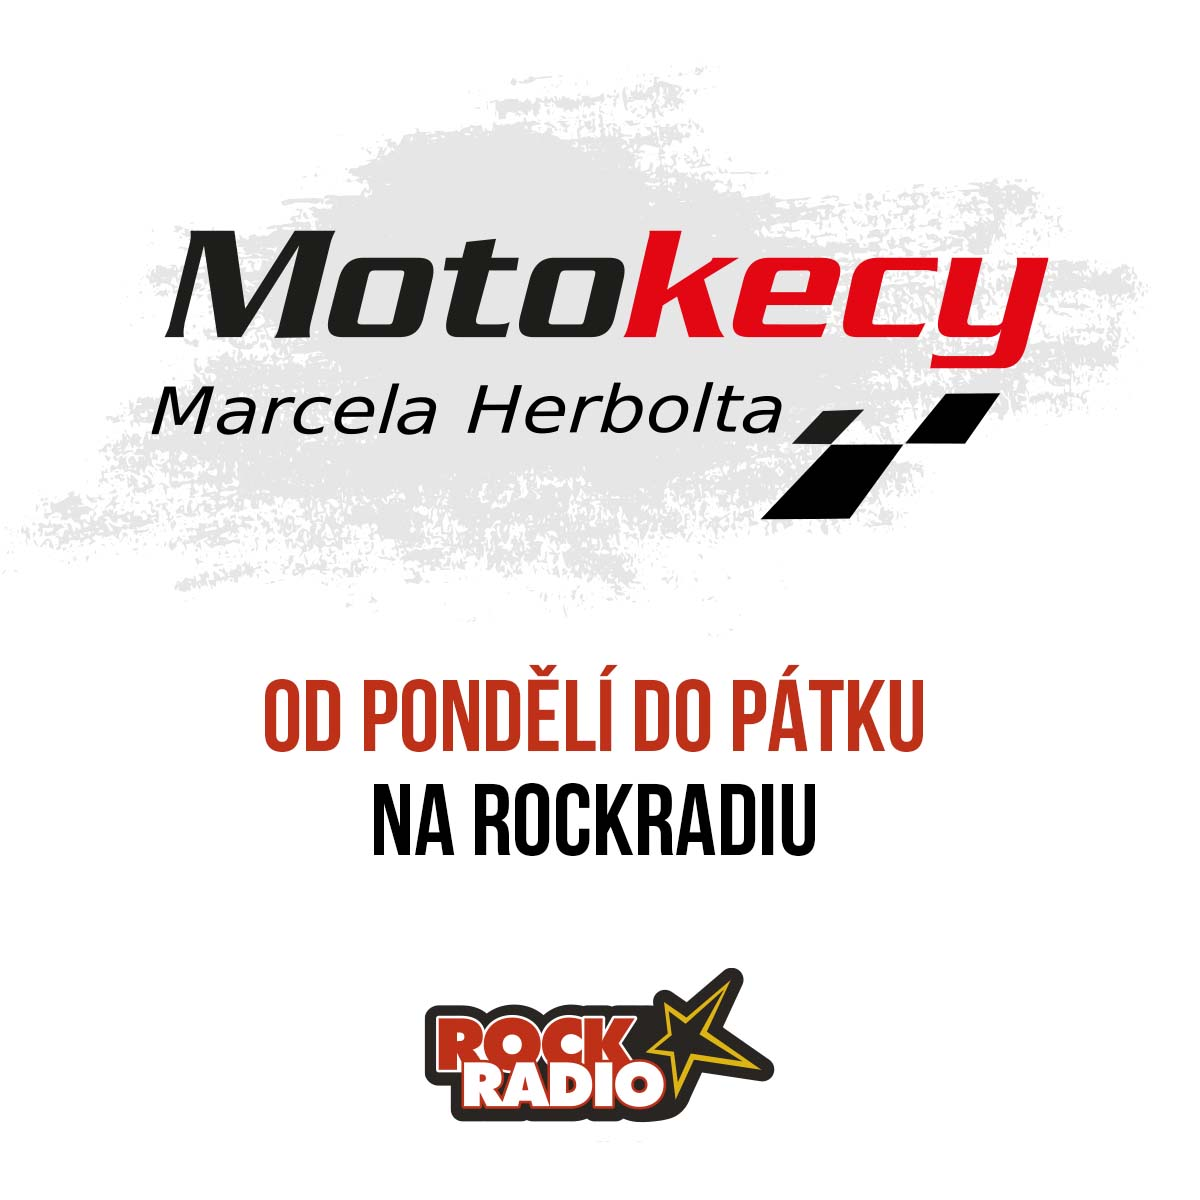 Motokecy Marcela Herbolta na úterý 10. října